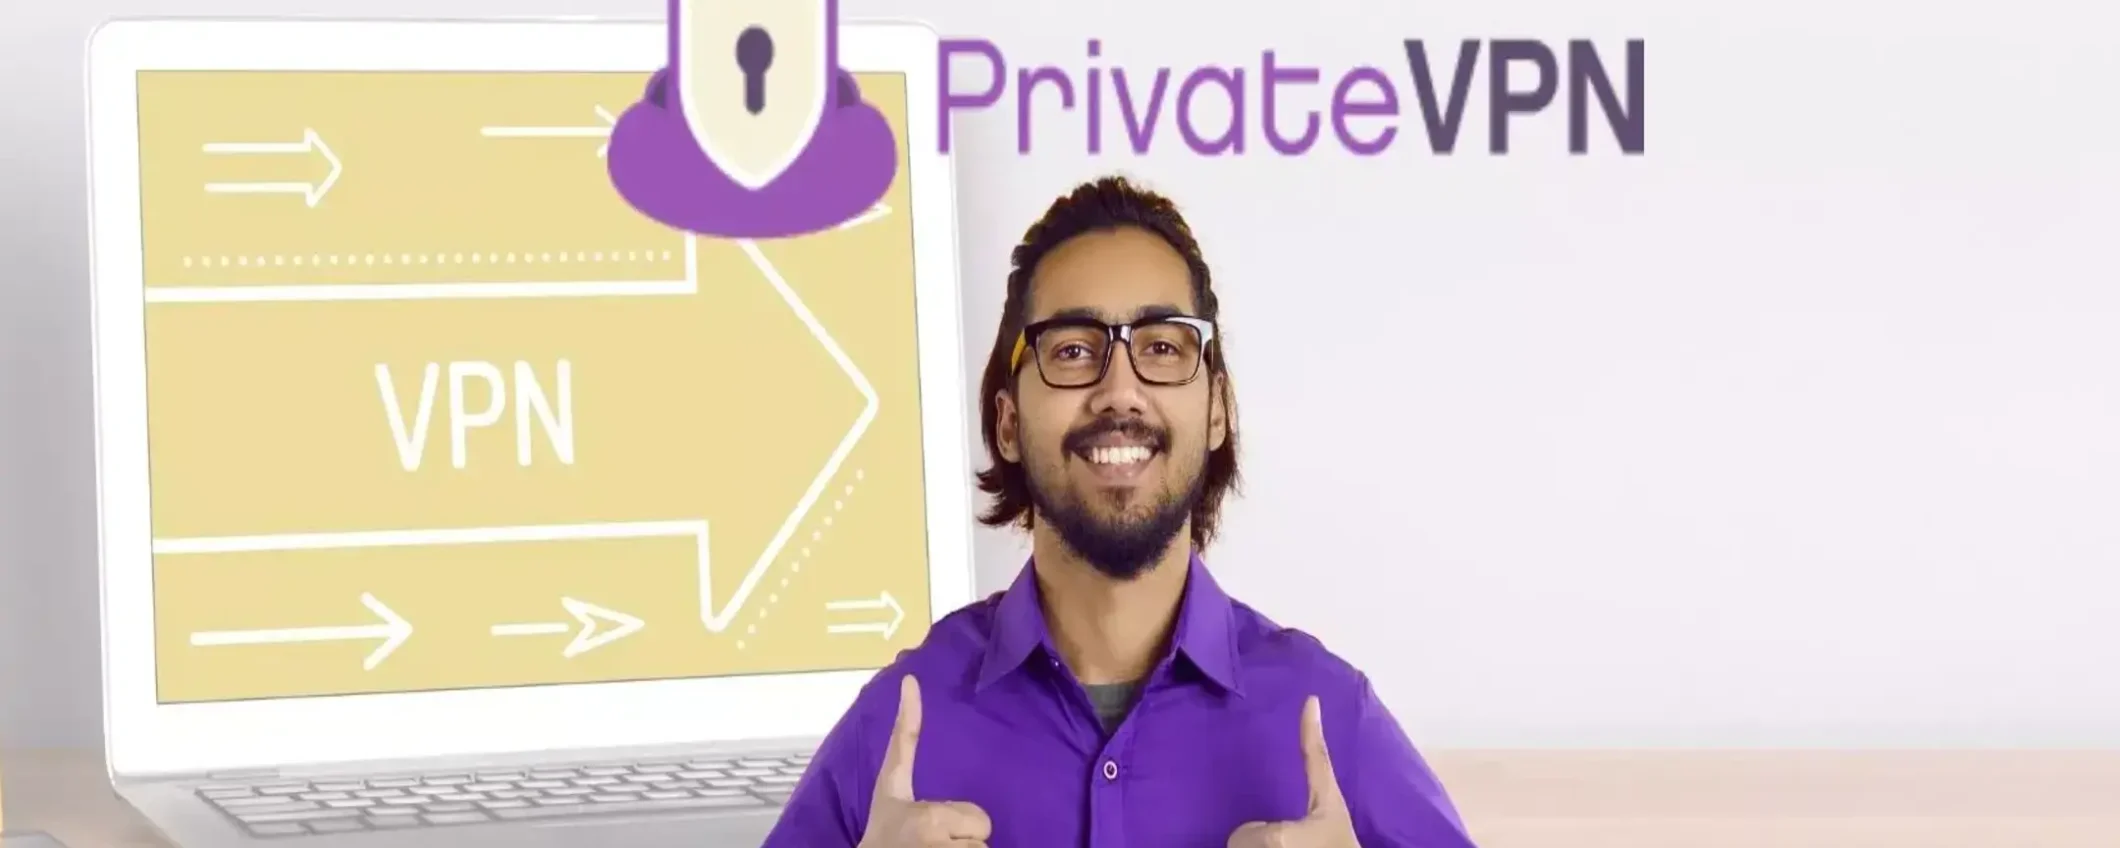 Naviga online in sicurezza con PrivateVPN a soli 2€ al mese